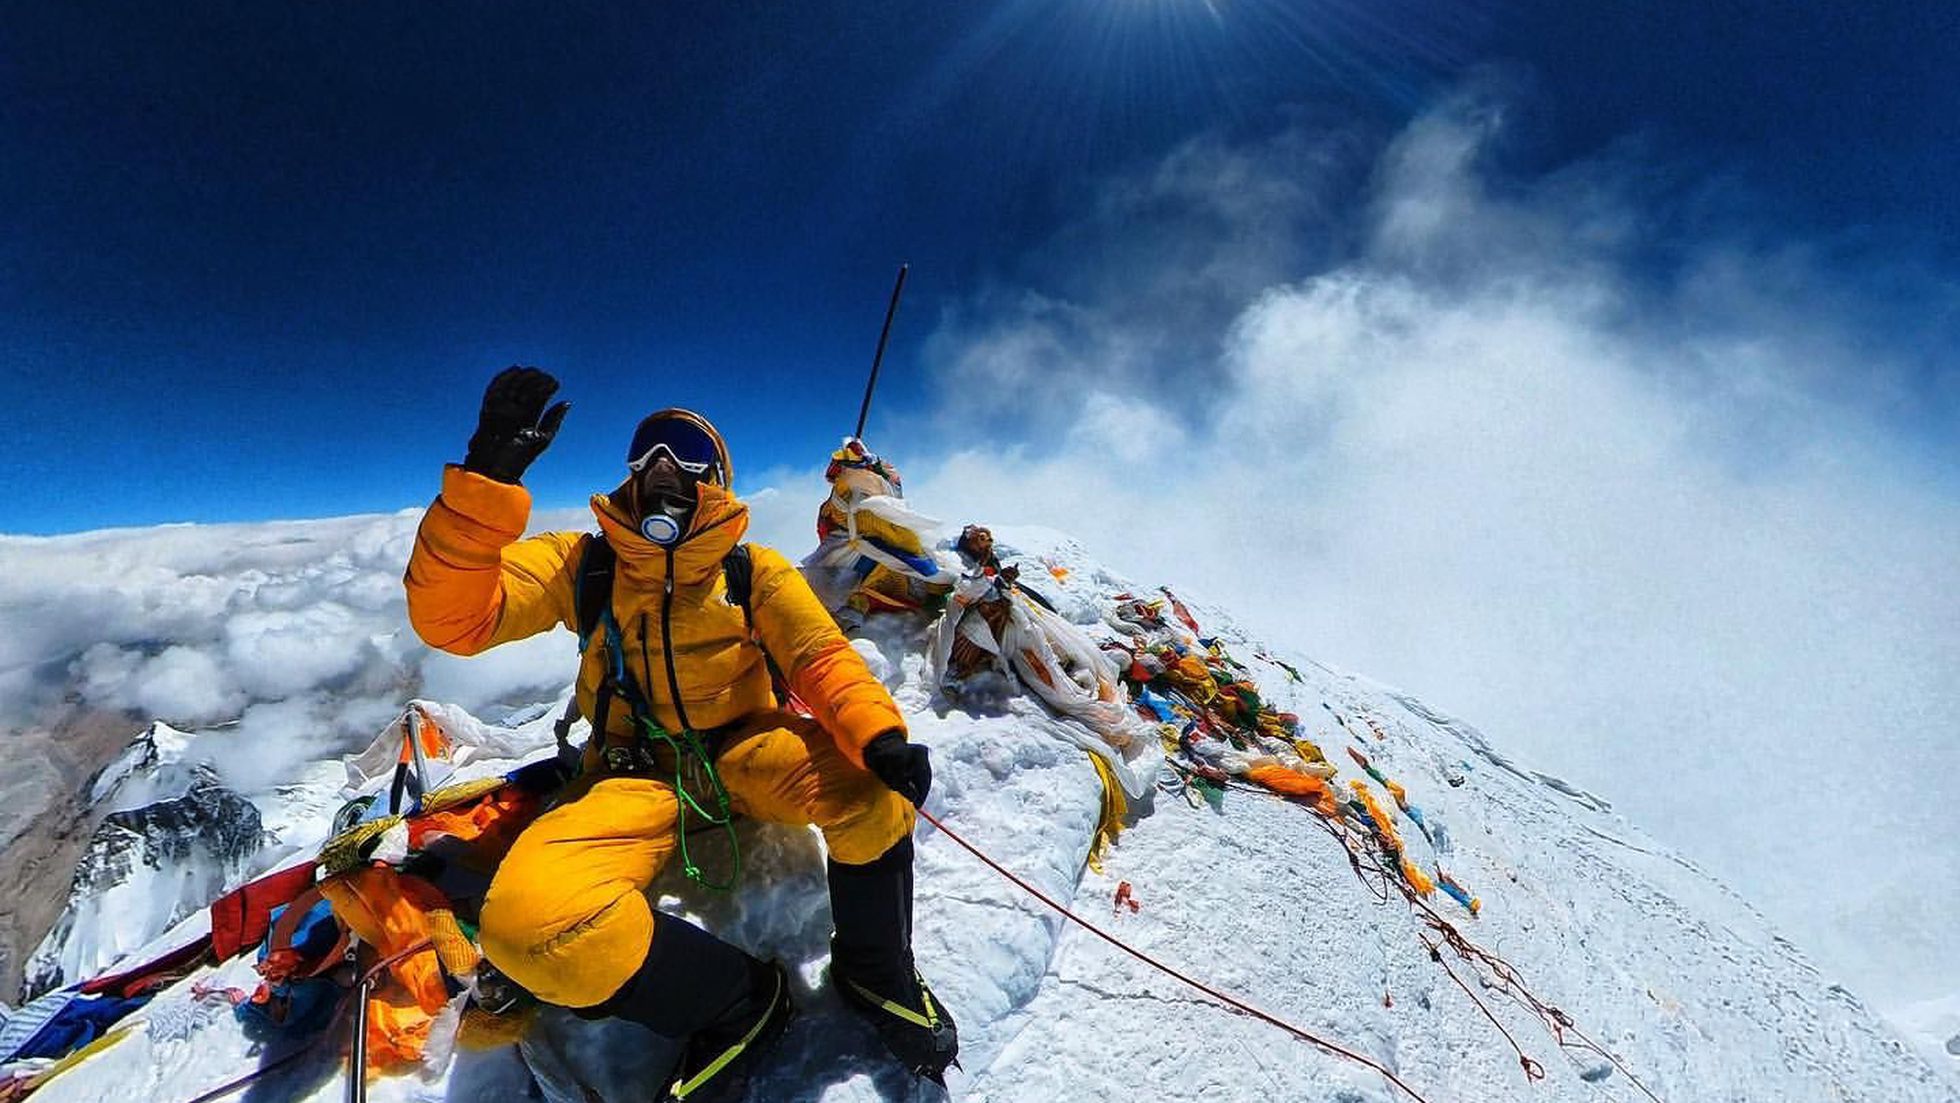 Hóa ra đỉnh Everest vẫn chưa phải là ngọn núi cao nhất trên Trái Đất! - Ảnh 1.